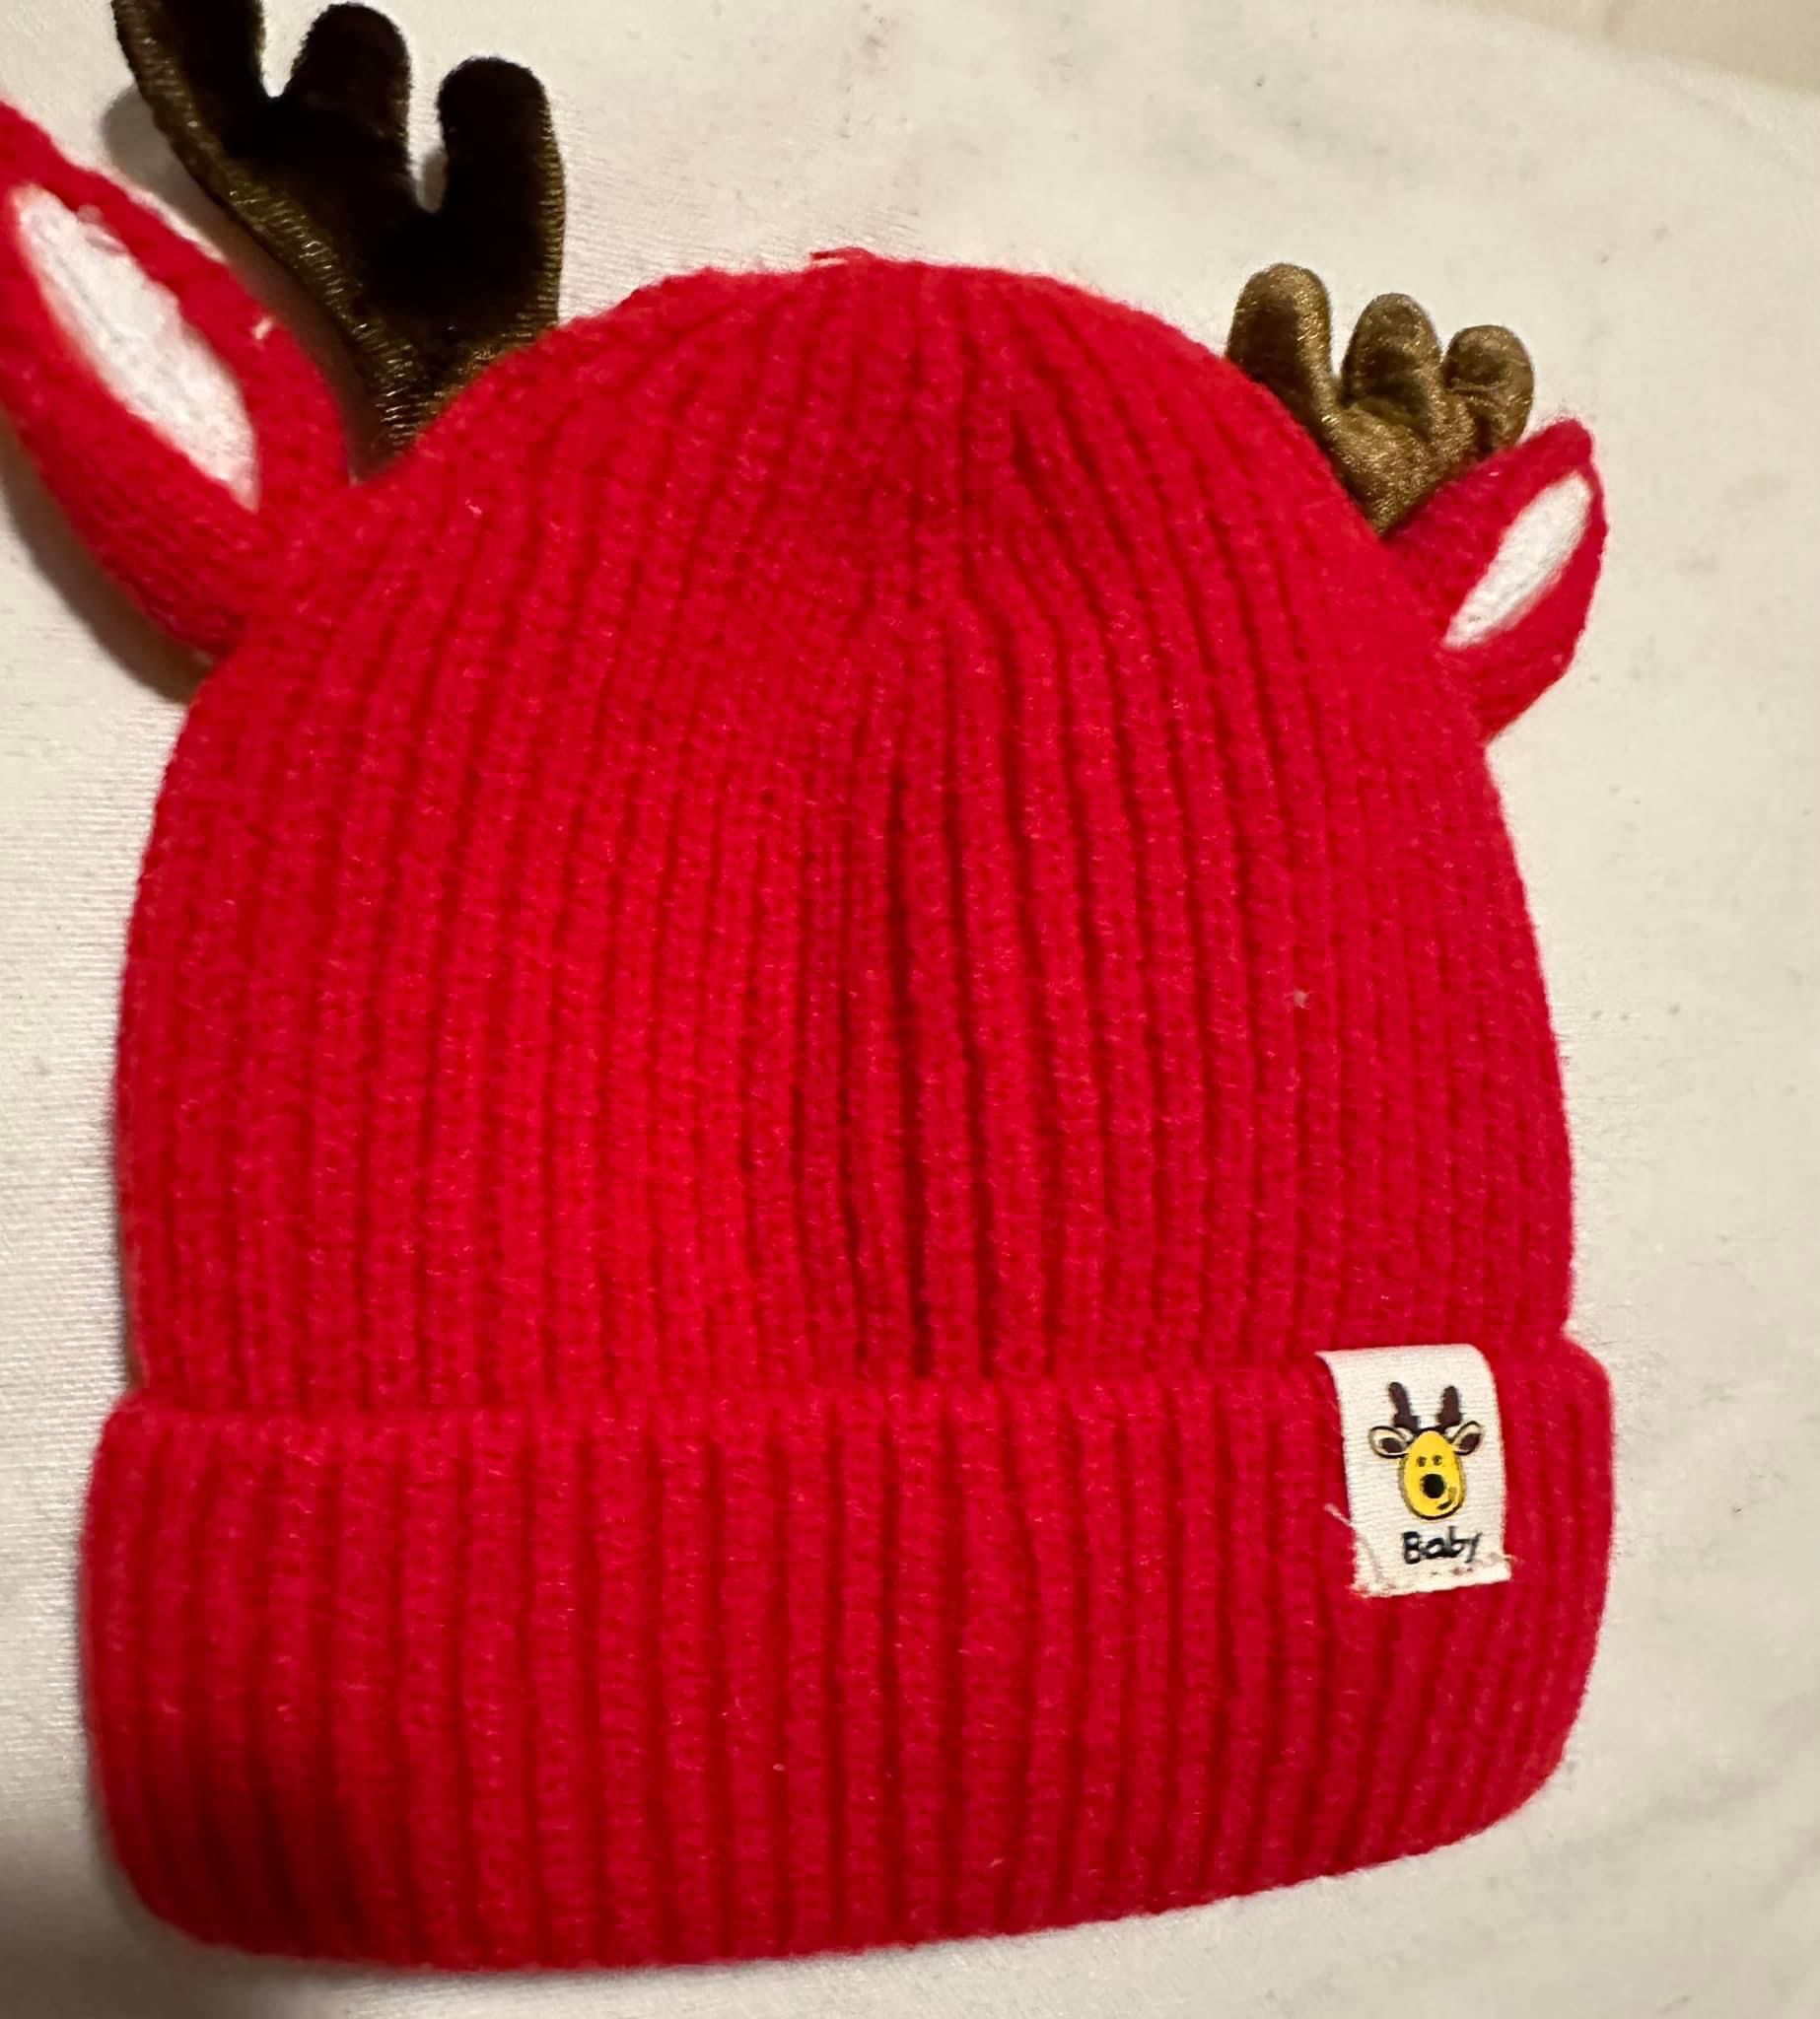 Cute reindeer baby hat. New $10